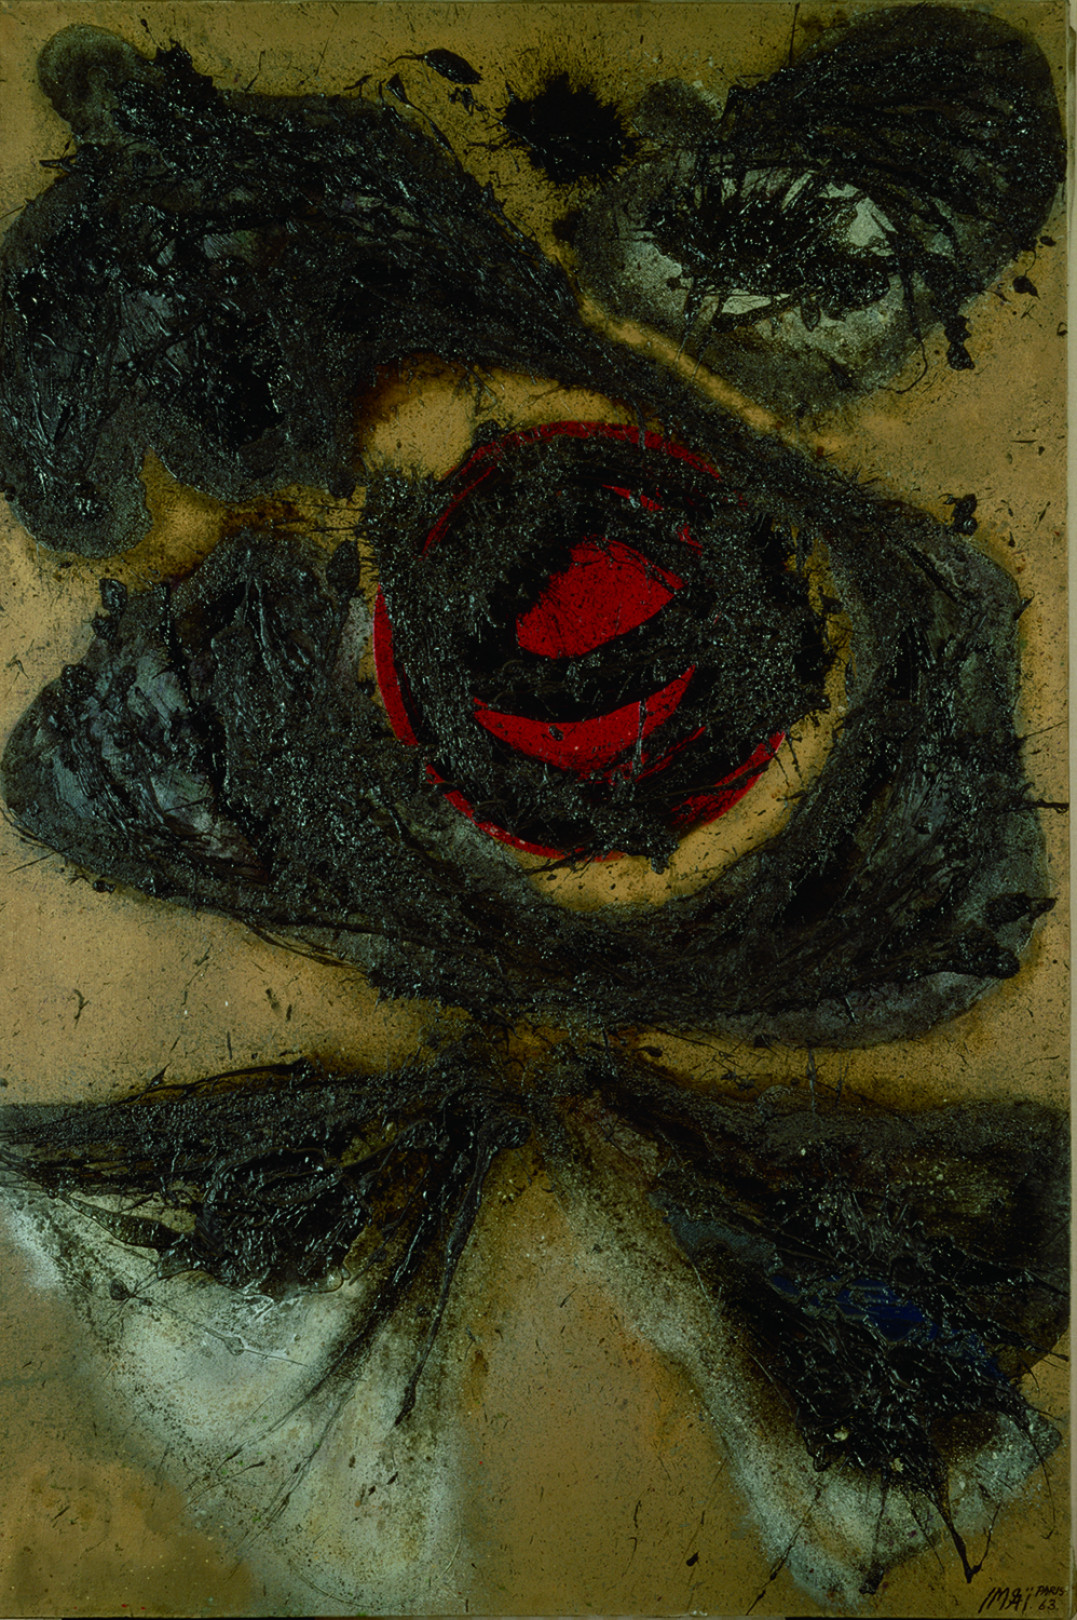 今井俊満「黒い太陽」1963 年 カンヴァスに油彩 195.1x129.8 cm